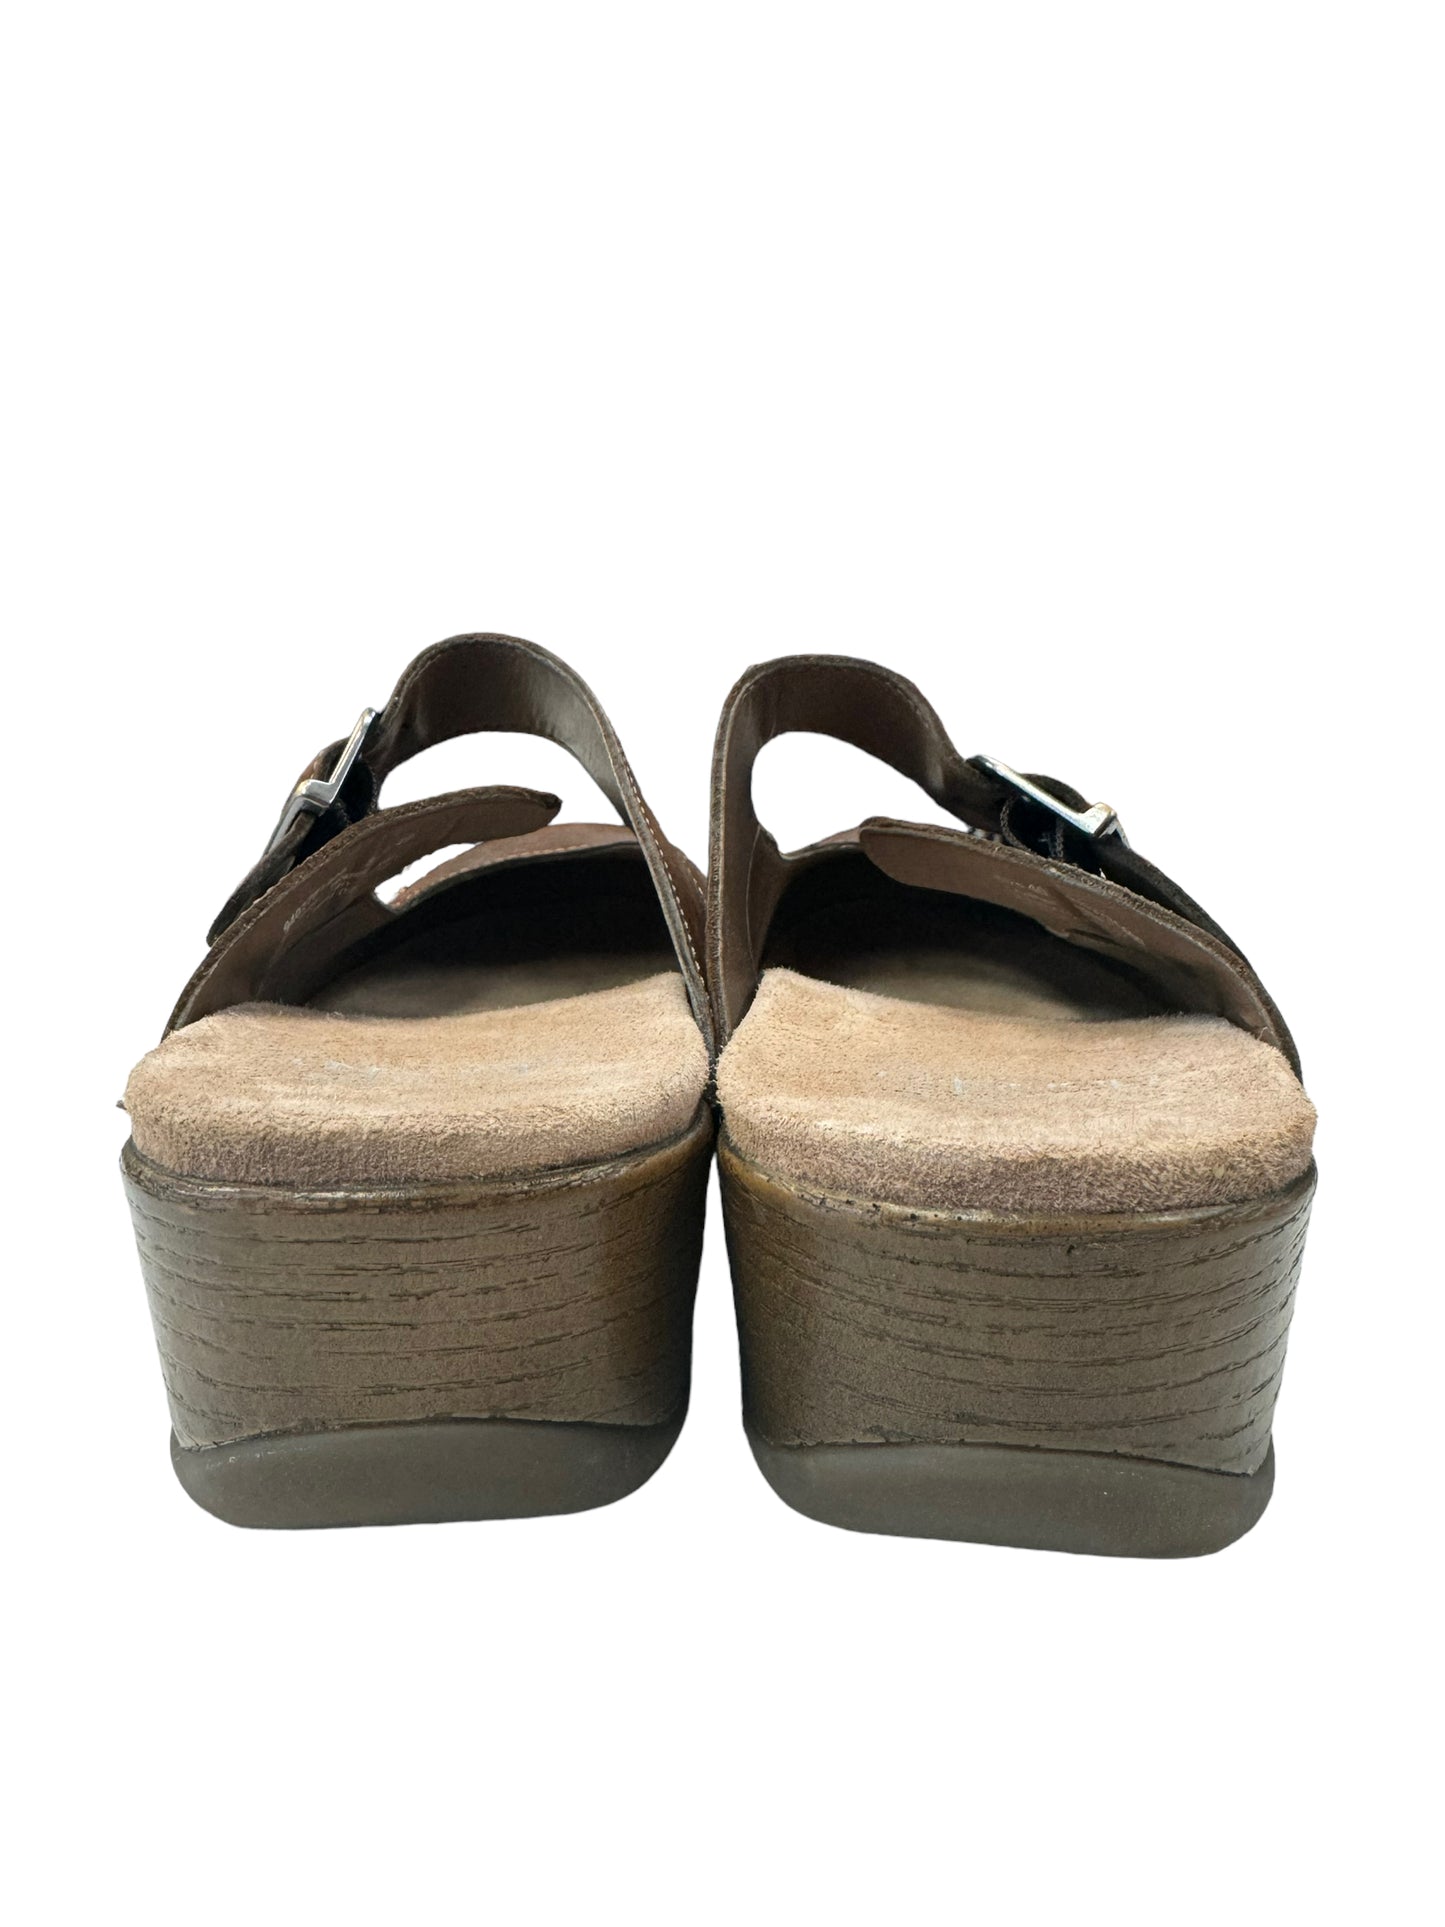 Shoes Flats By Dansko  Size: 9